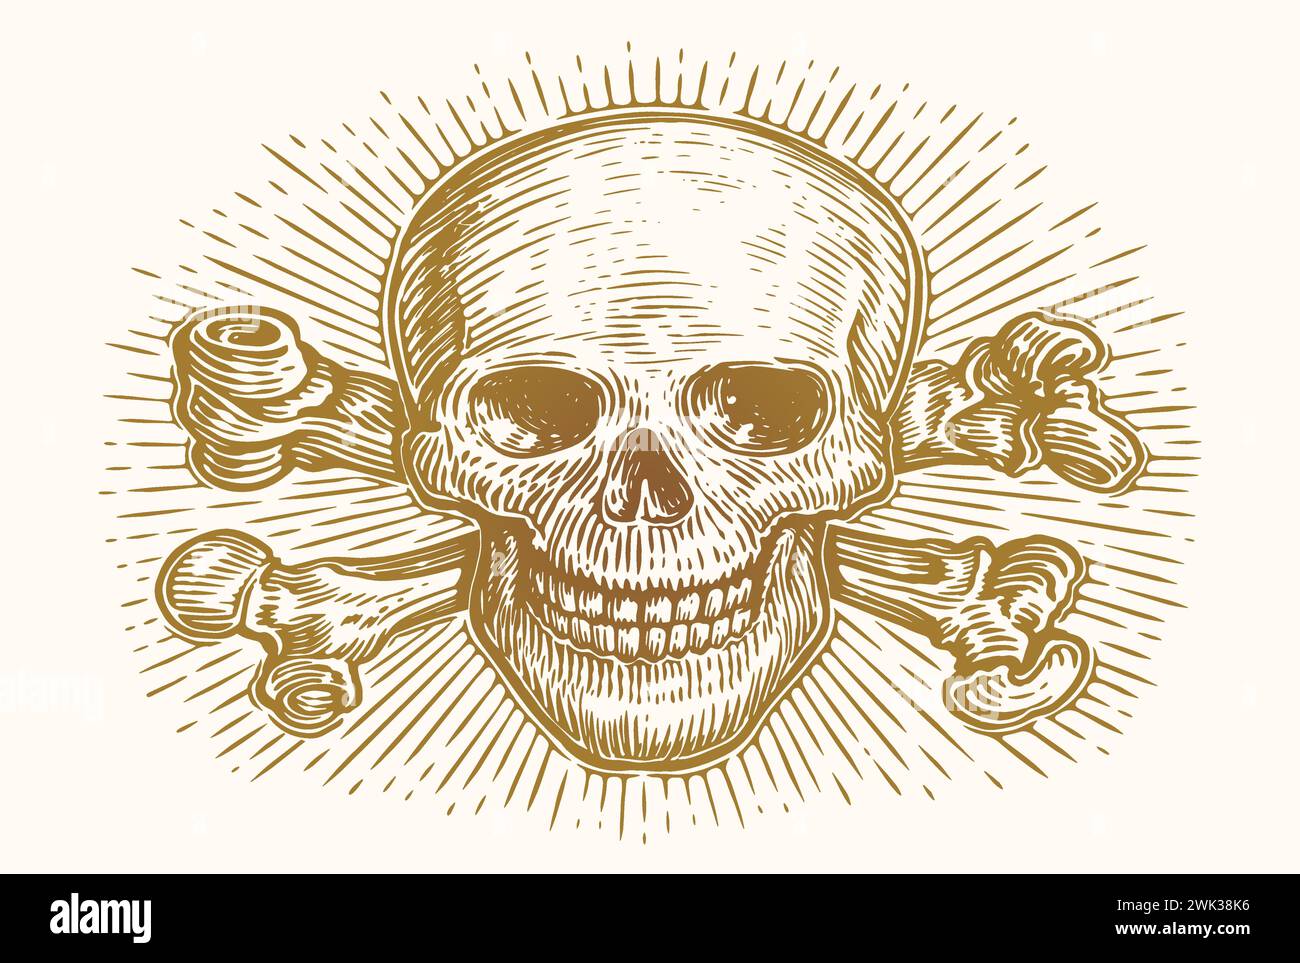 Schädel und Kreuzknochen mit Strahlen. Skelettkopfskizze des Menschen. Handgezeichnete Vintage-Vektor-Illustration Stock Vektor